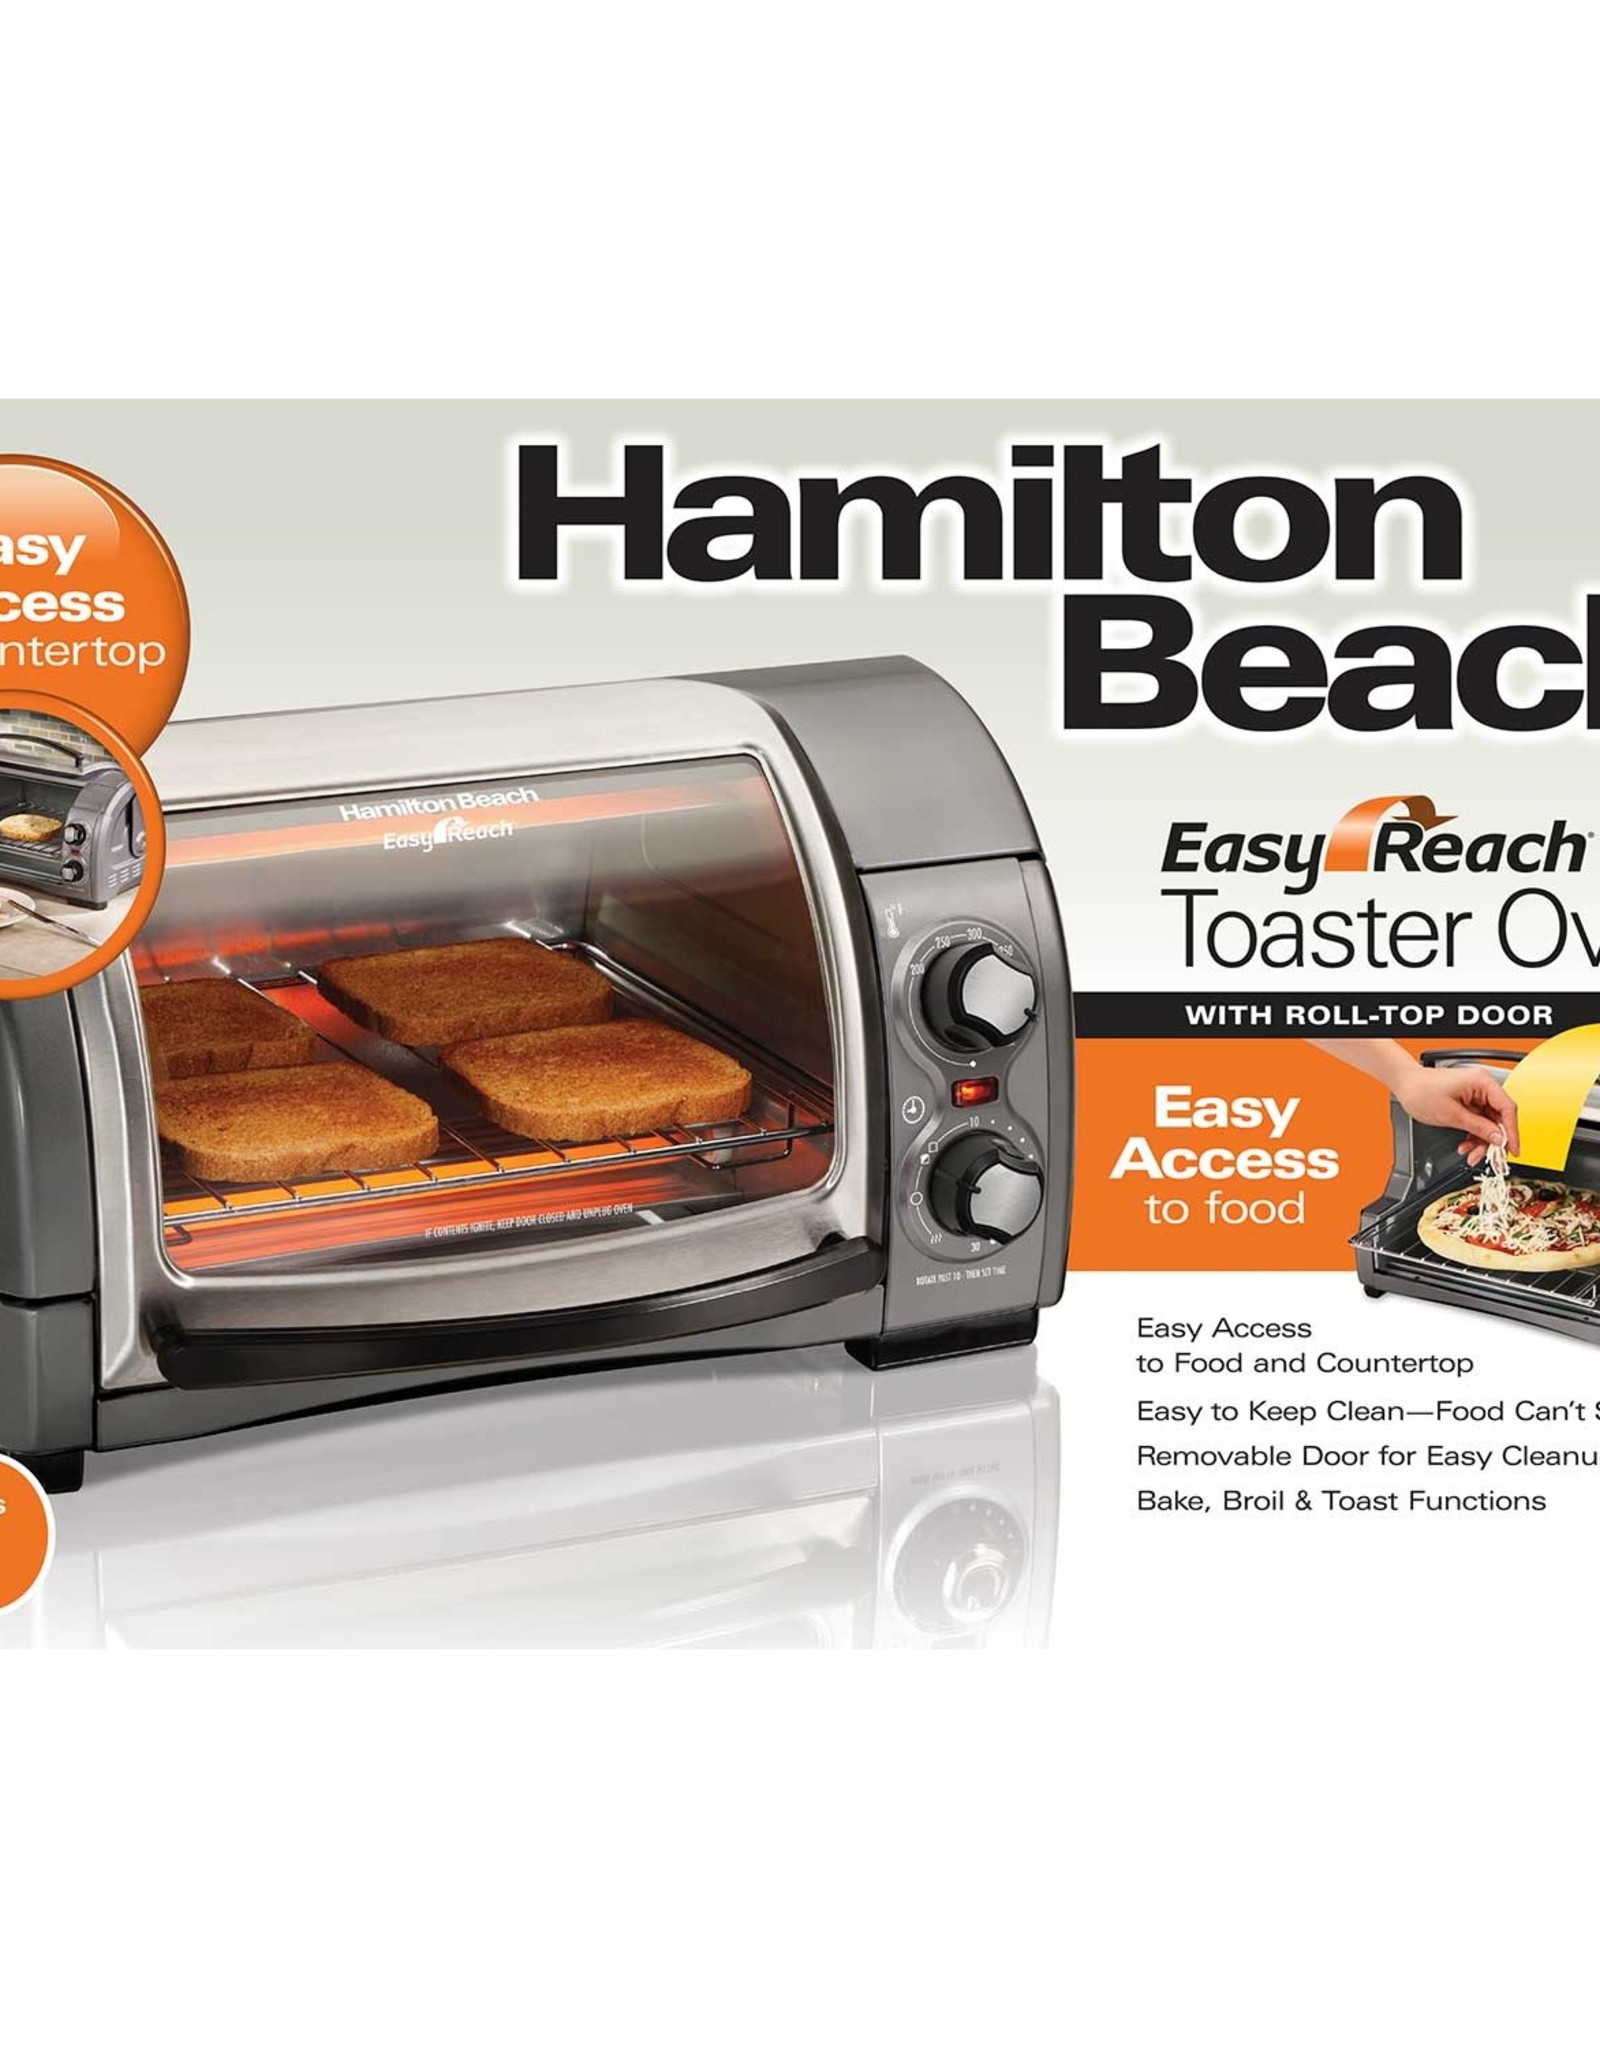 Hamilton Beach Hamilton Beach Easy Reach 4 Slice Toaster Oven